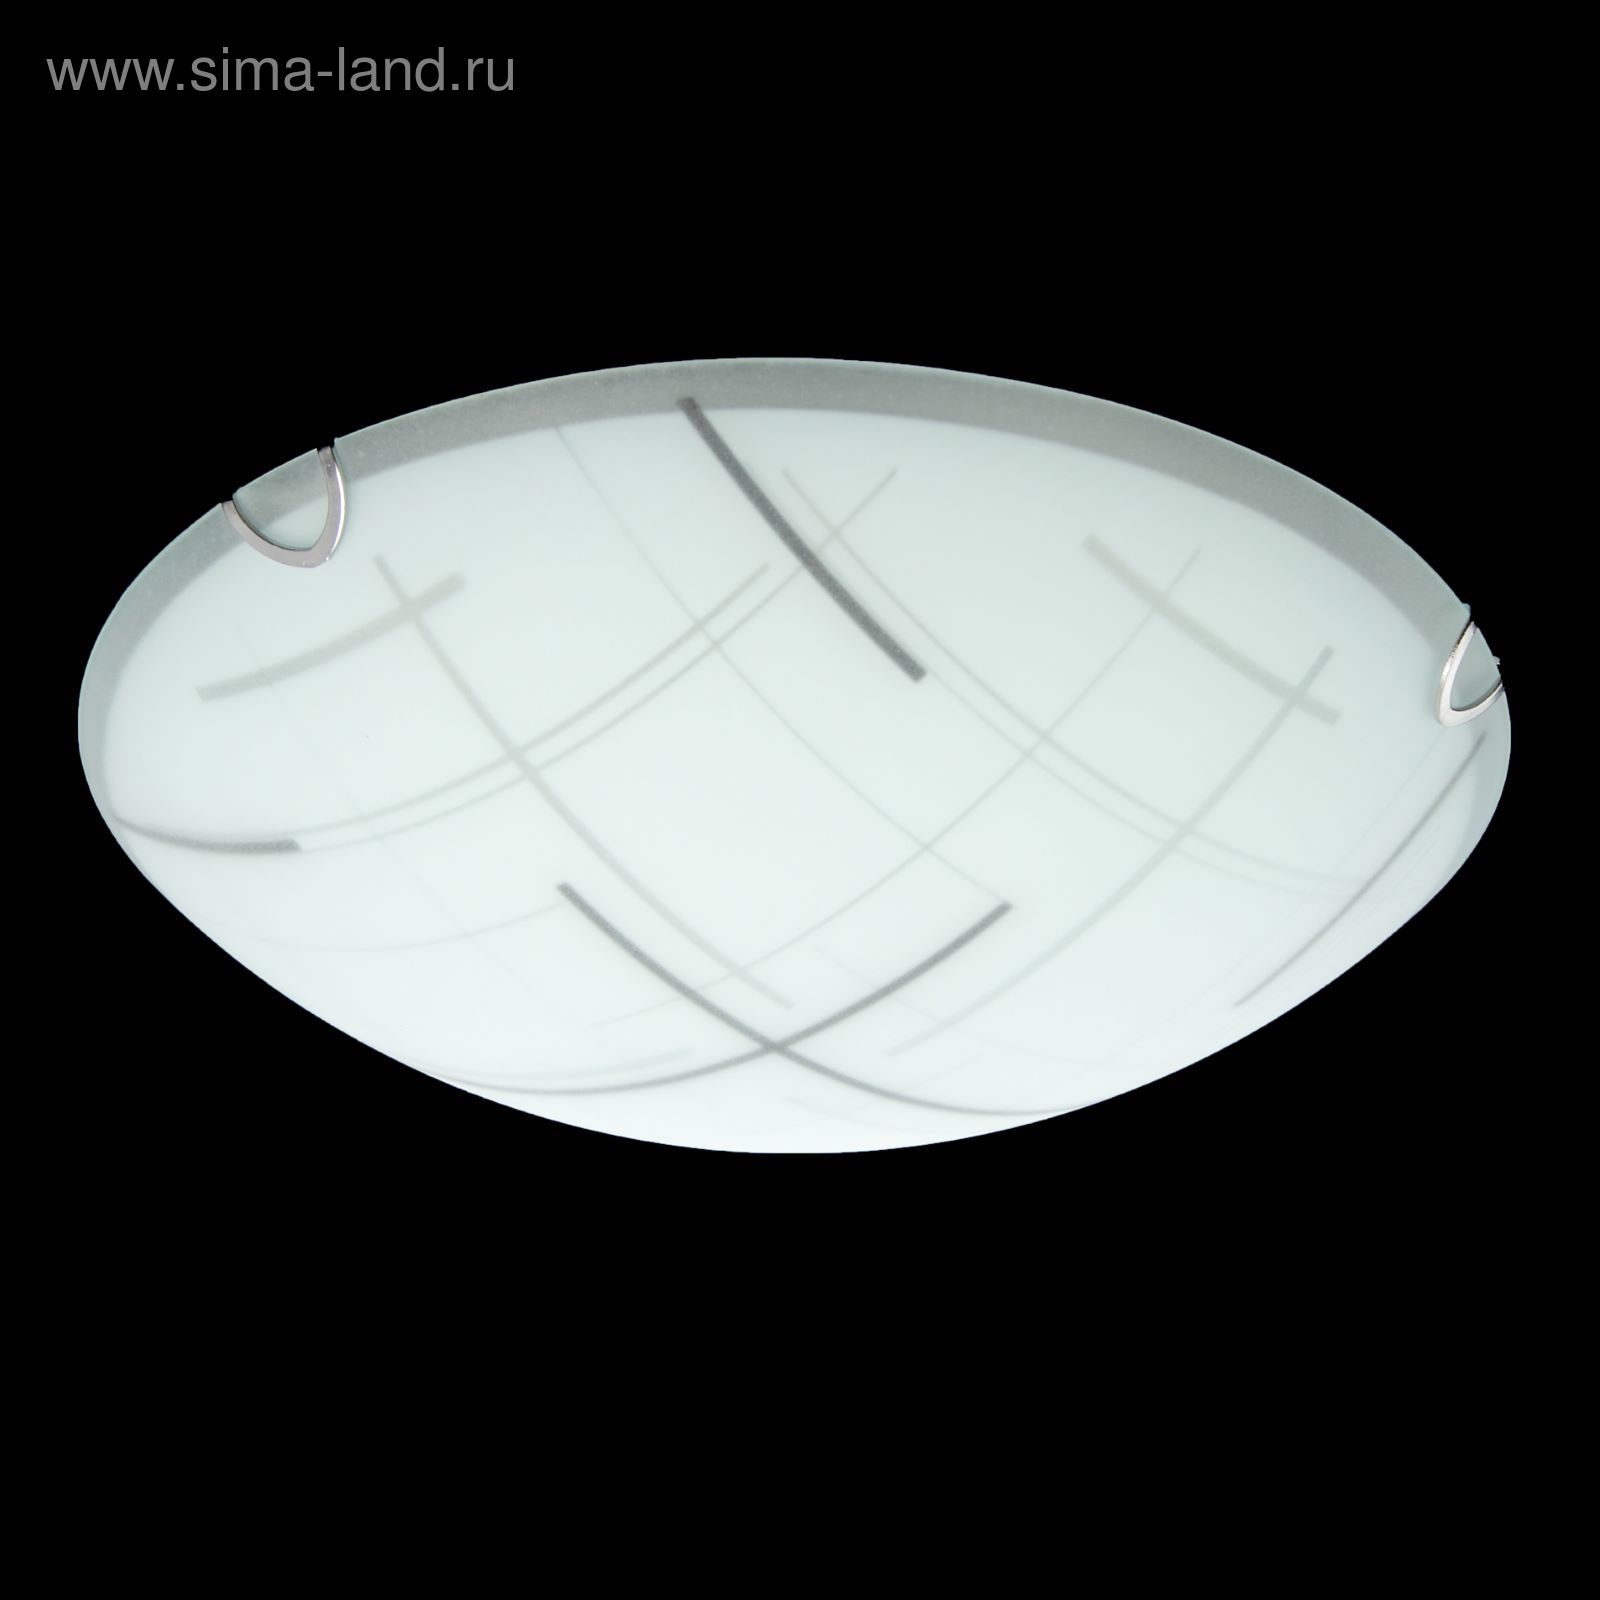 Светильник настенно-потолочный Светпром Росита цветной 60вт 47304 е27х3